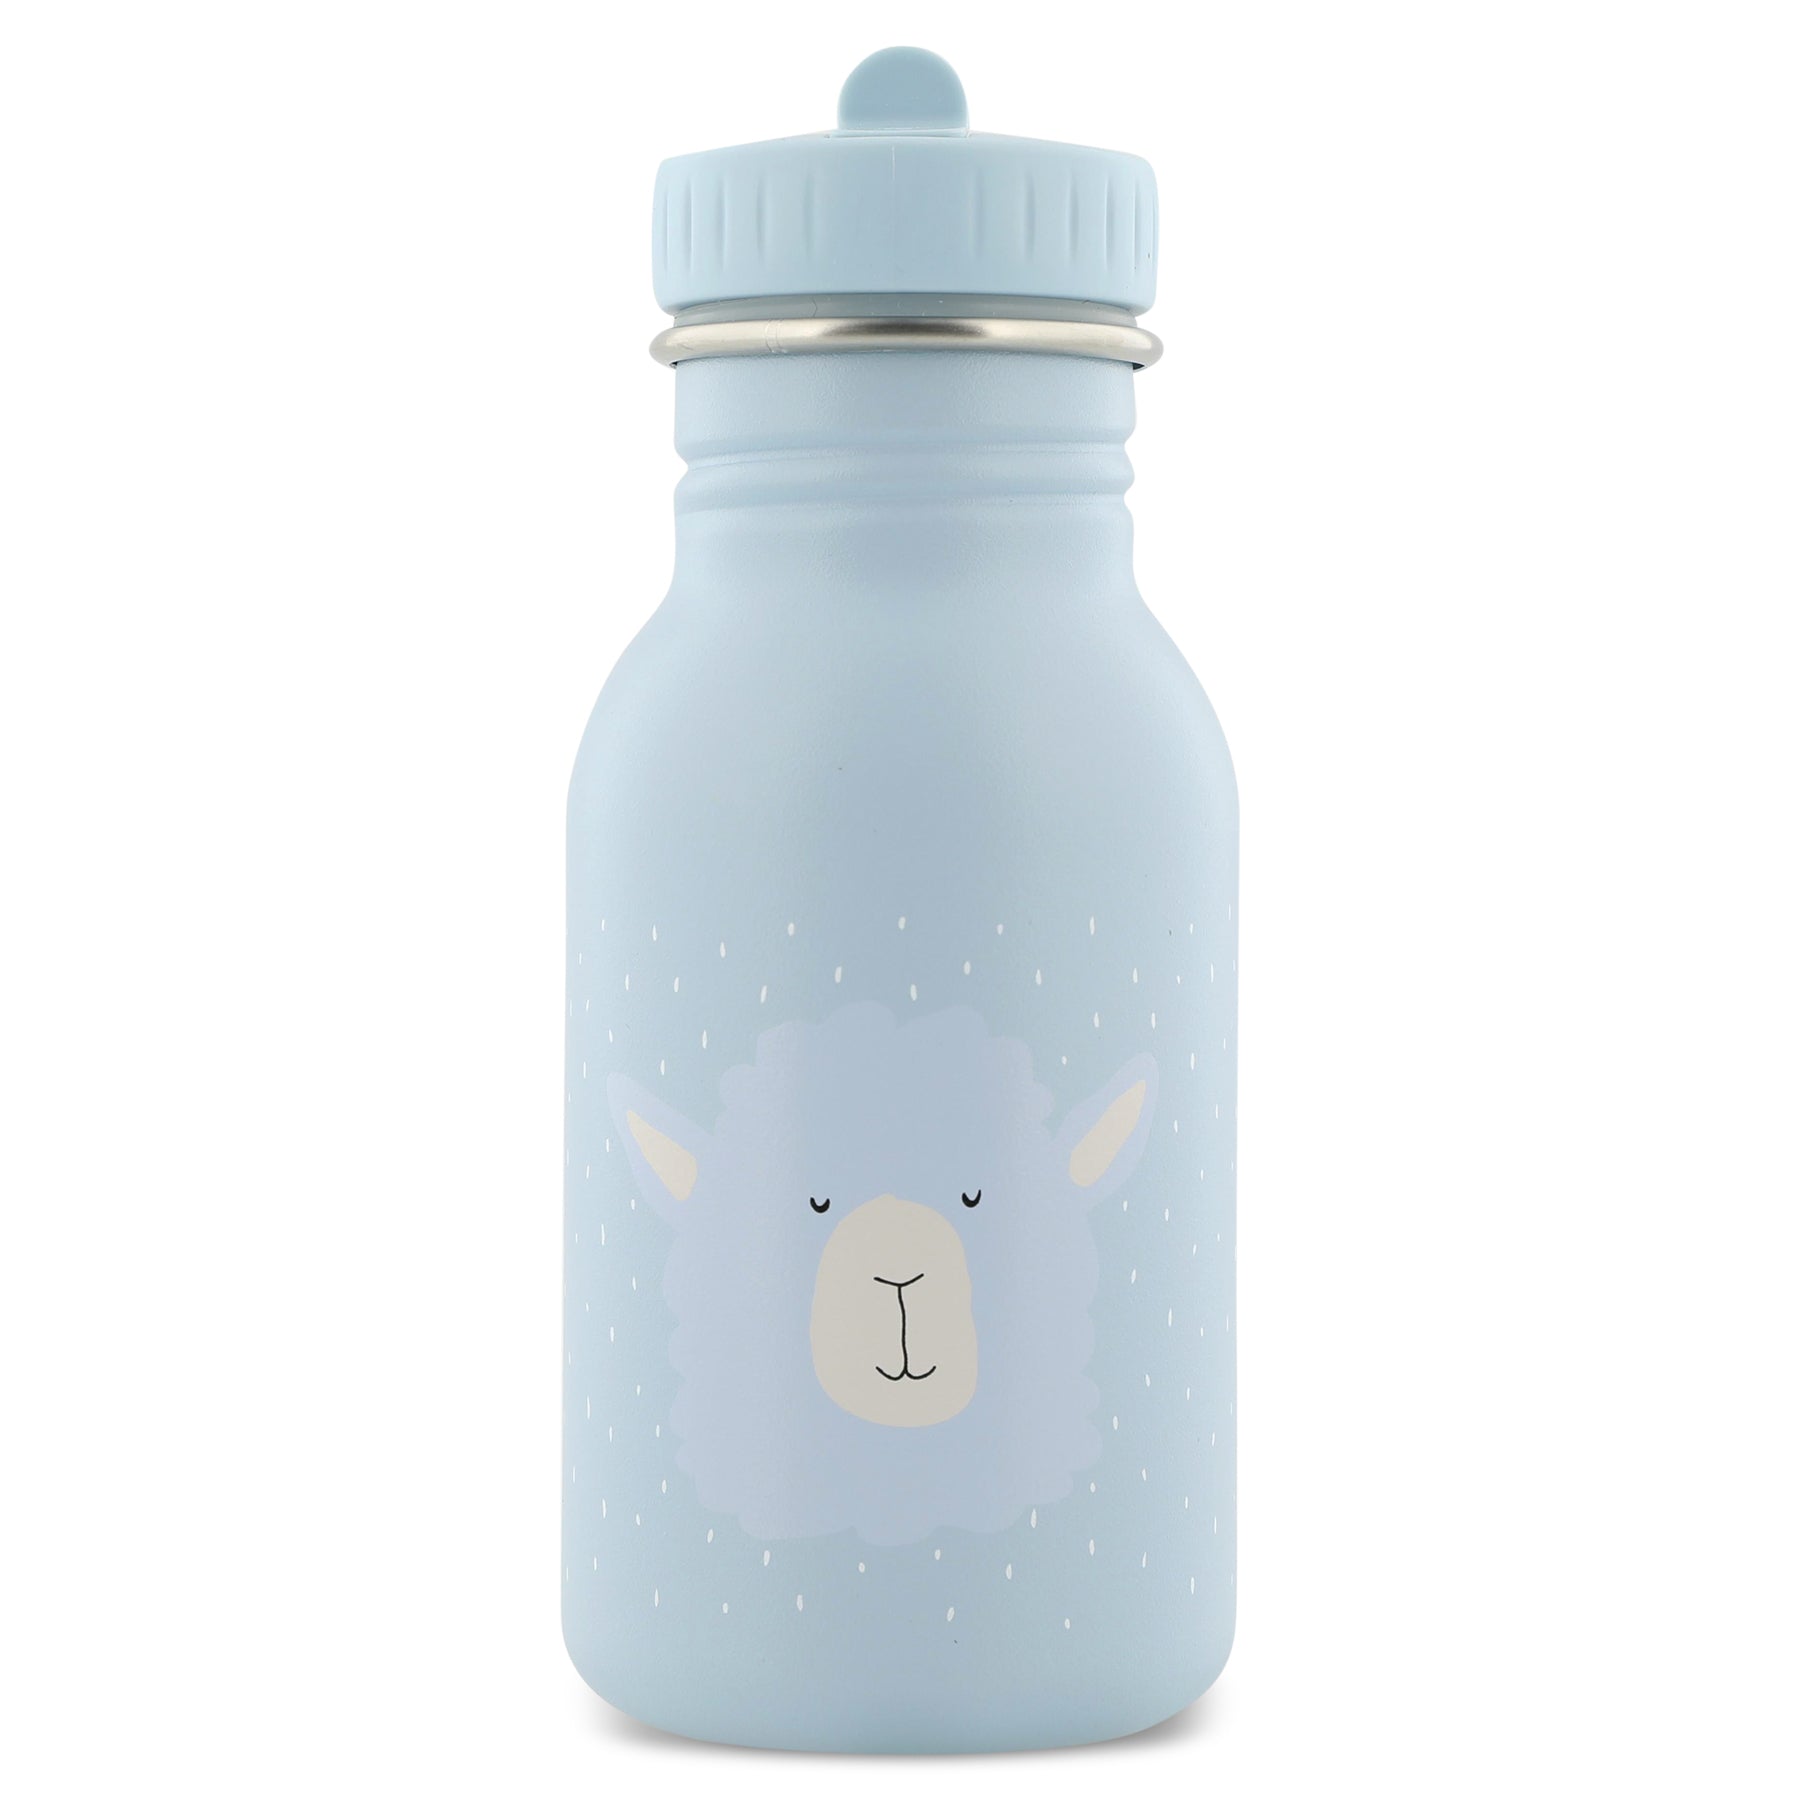 TRIXIE // Alpaca Water Bottle